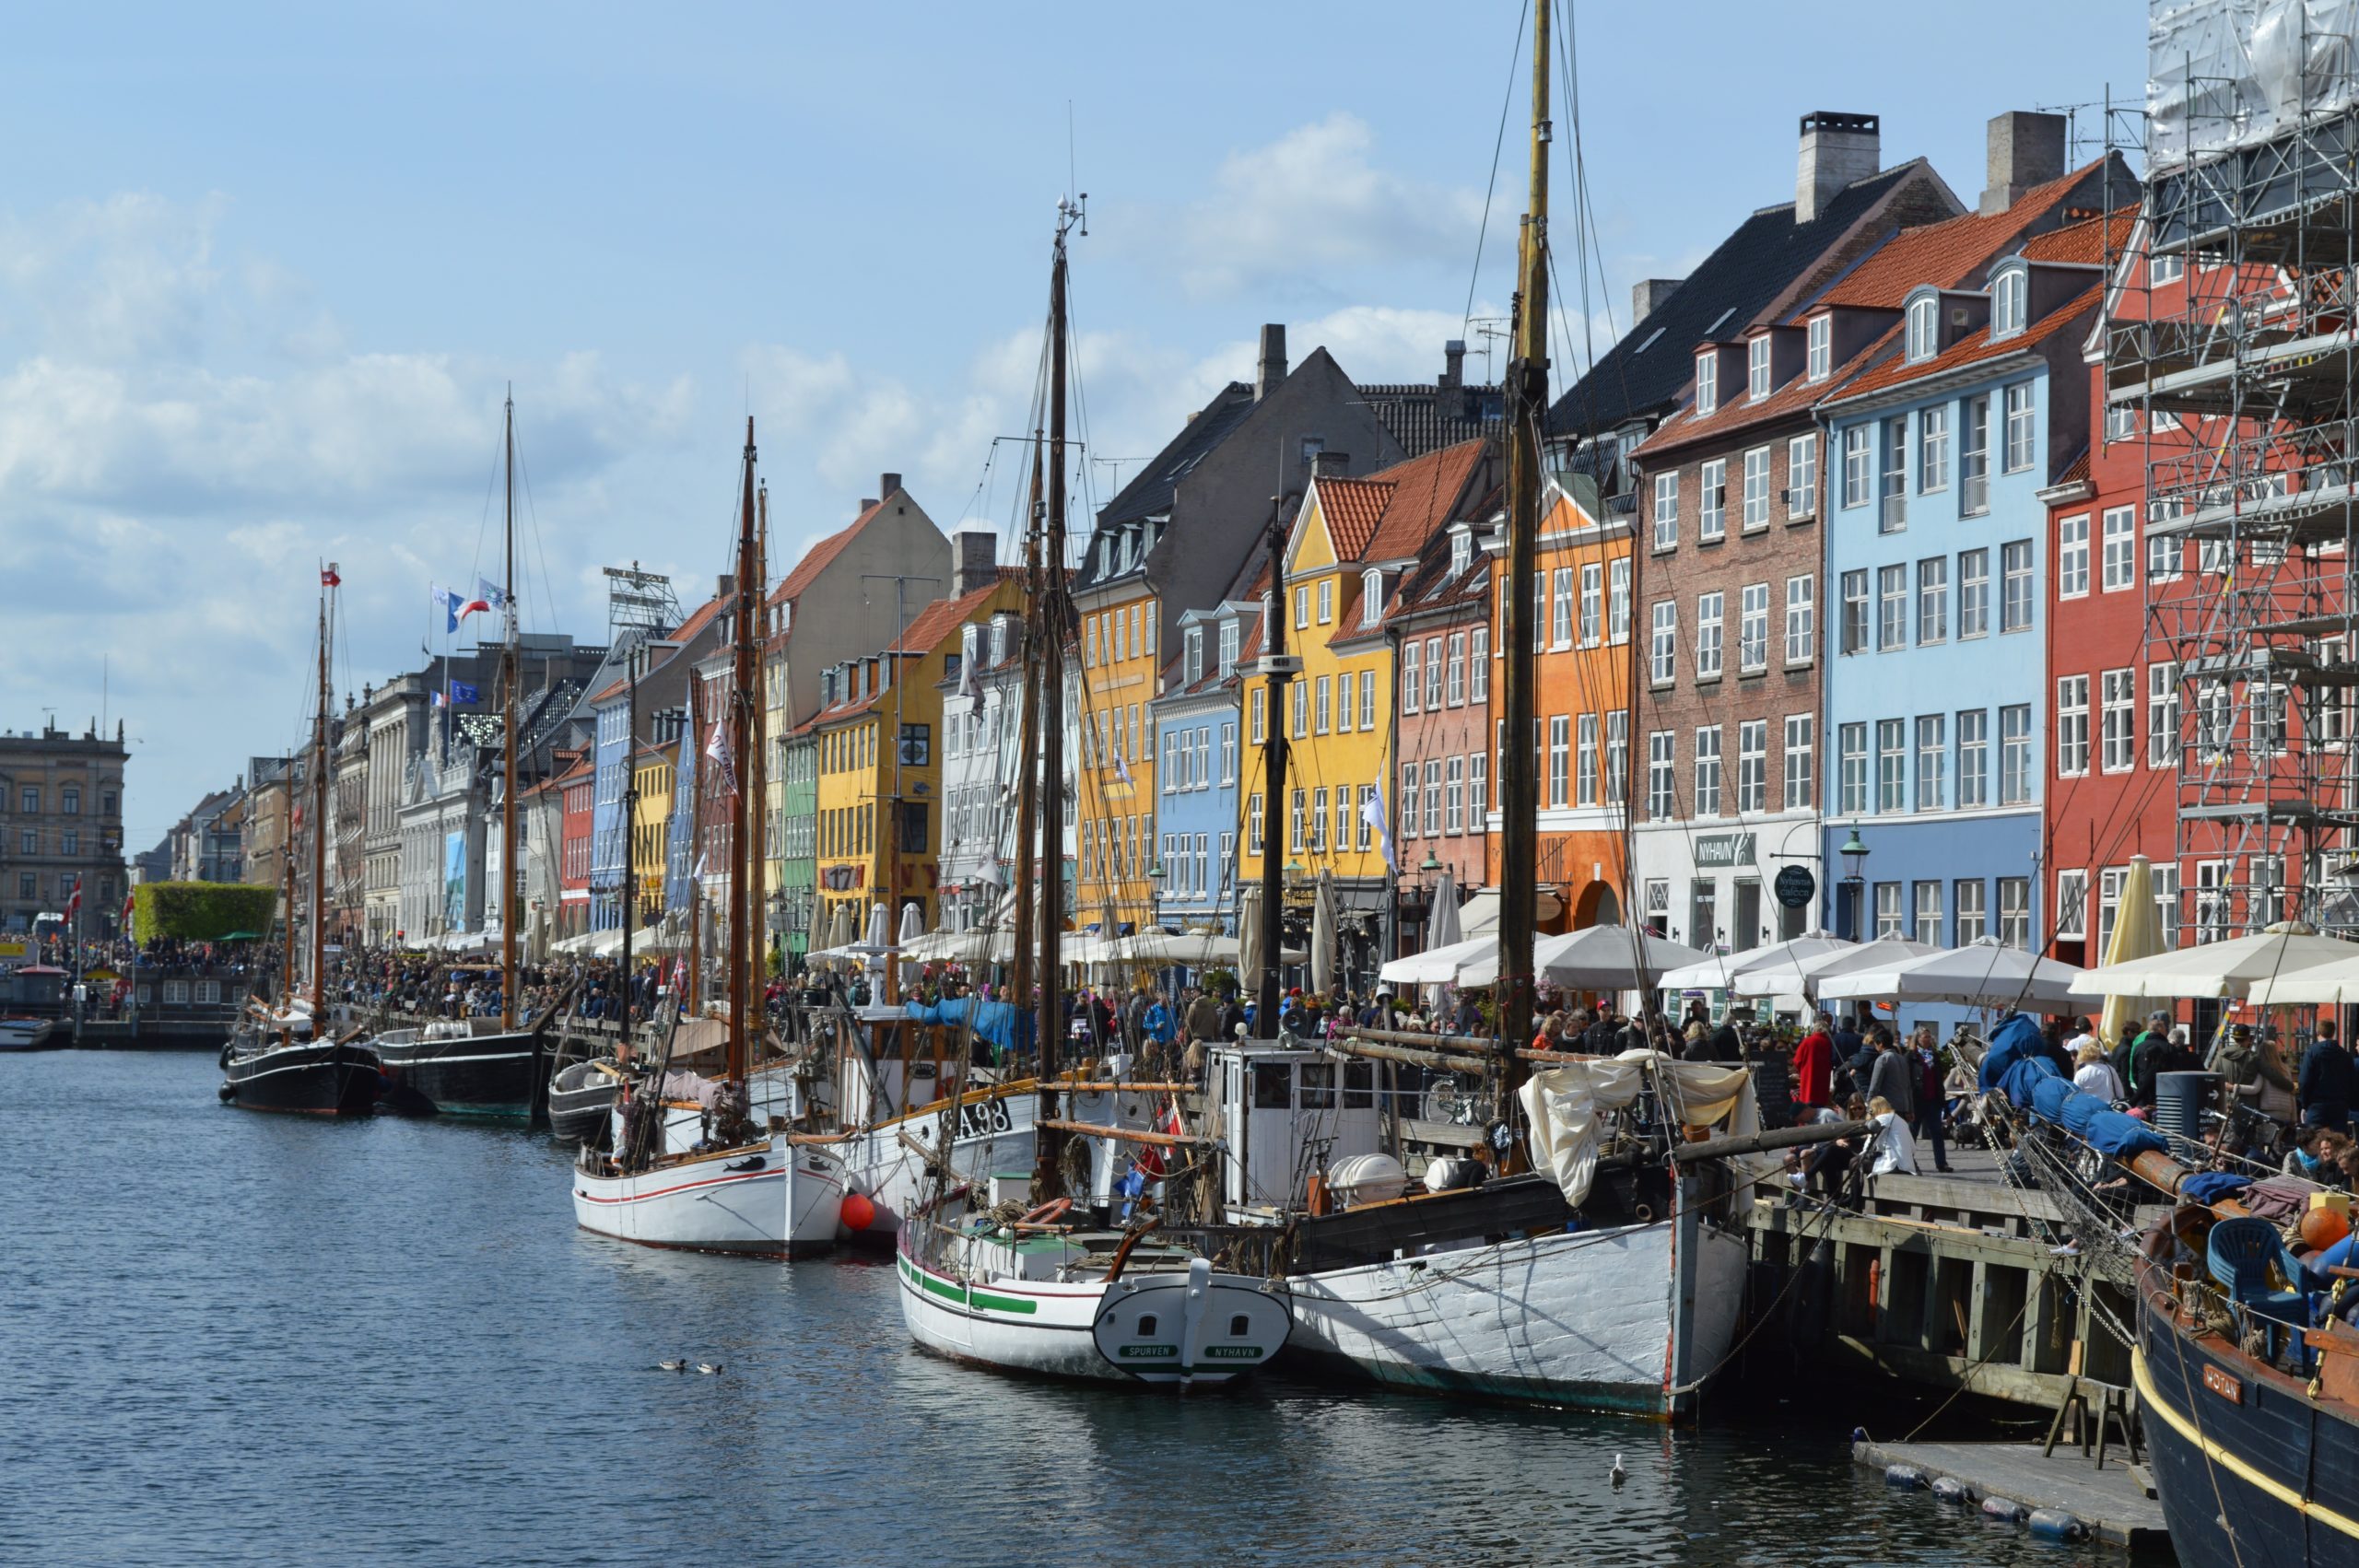 Welche Sehenswürdigkeiten muss man in Dänemark gesehen haben?